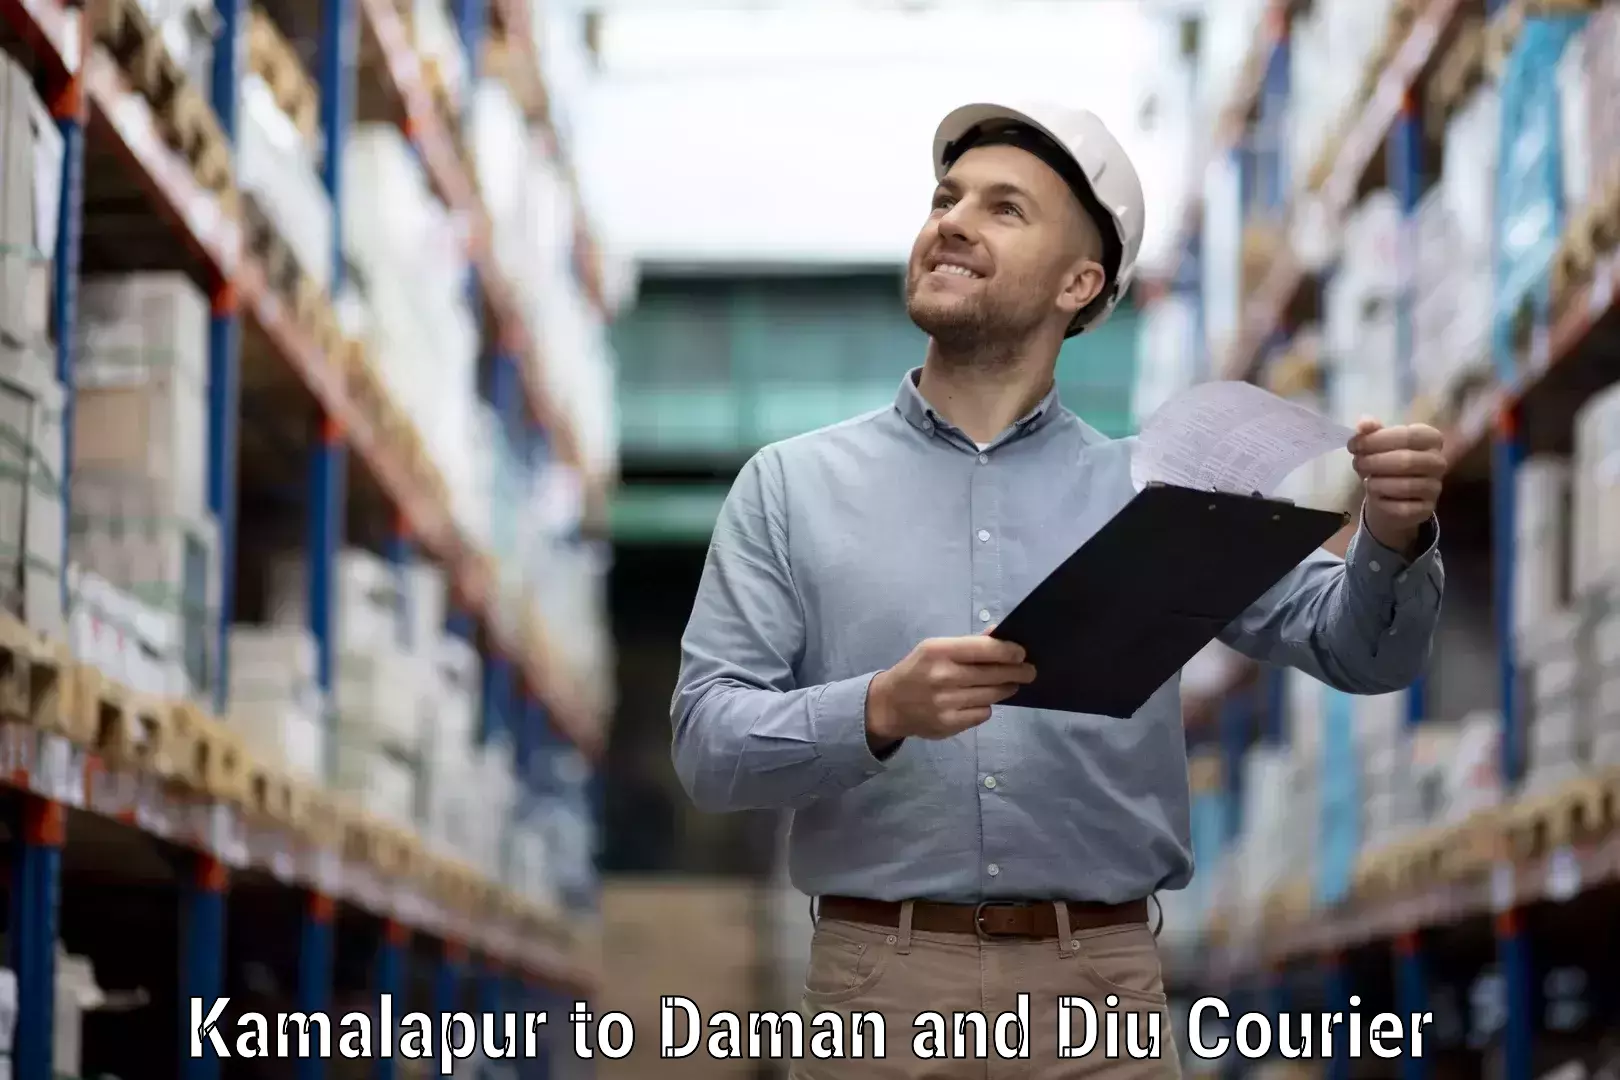 Courier app Kamalapur to Daman